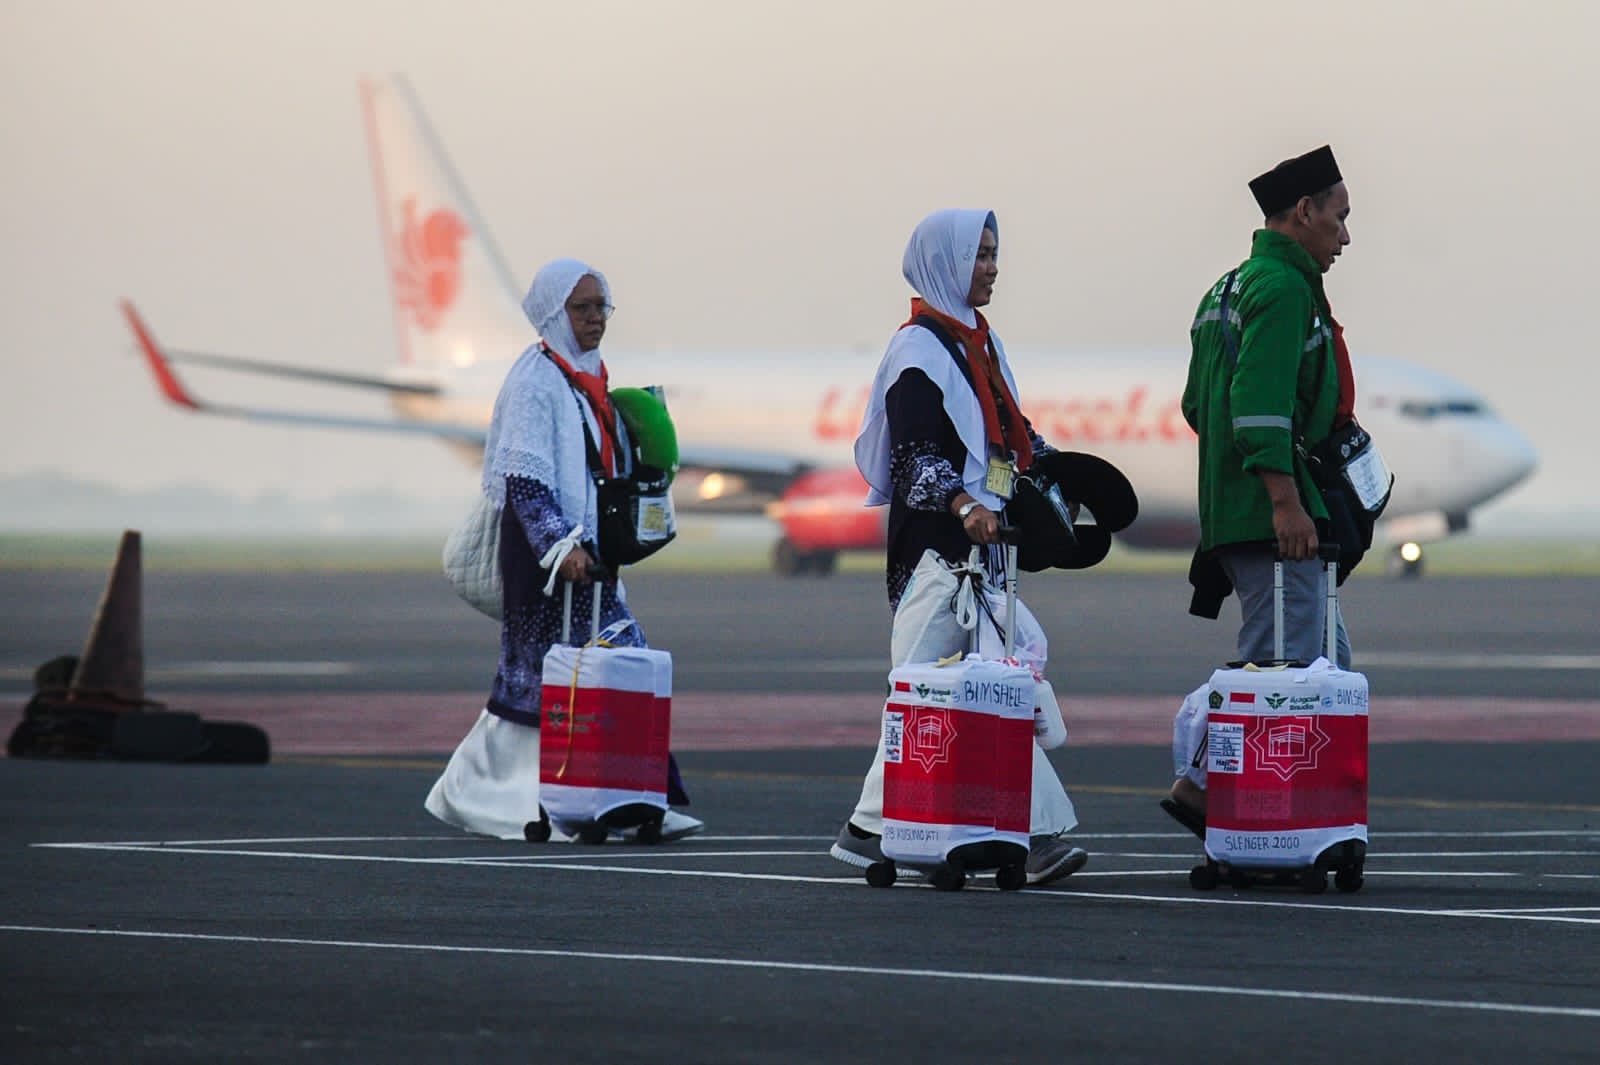 Mengenal Layanan Fast Track di Bandara untuk Jamaah Haji Indonesia, Berangkat ke Tanah Suci Jadi Mudah!